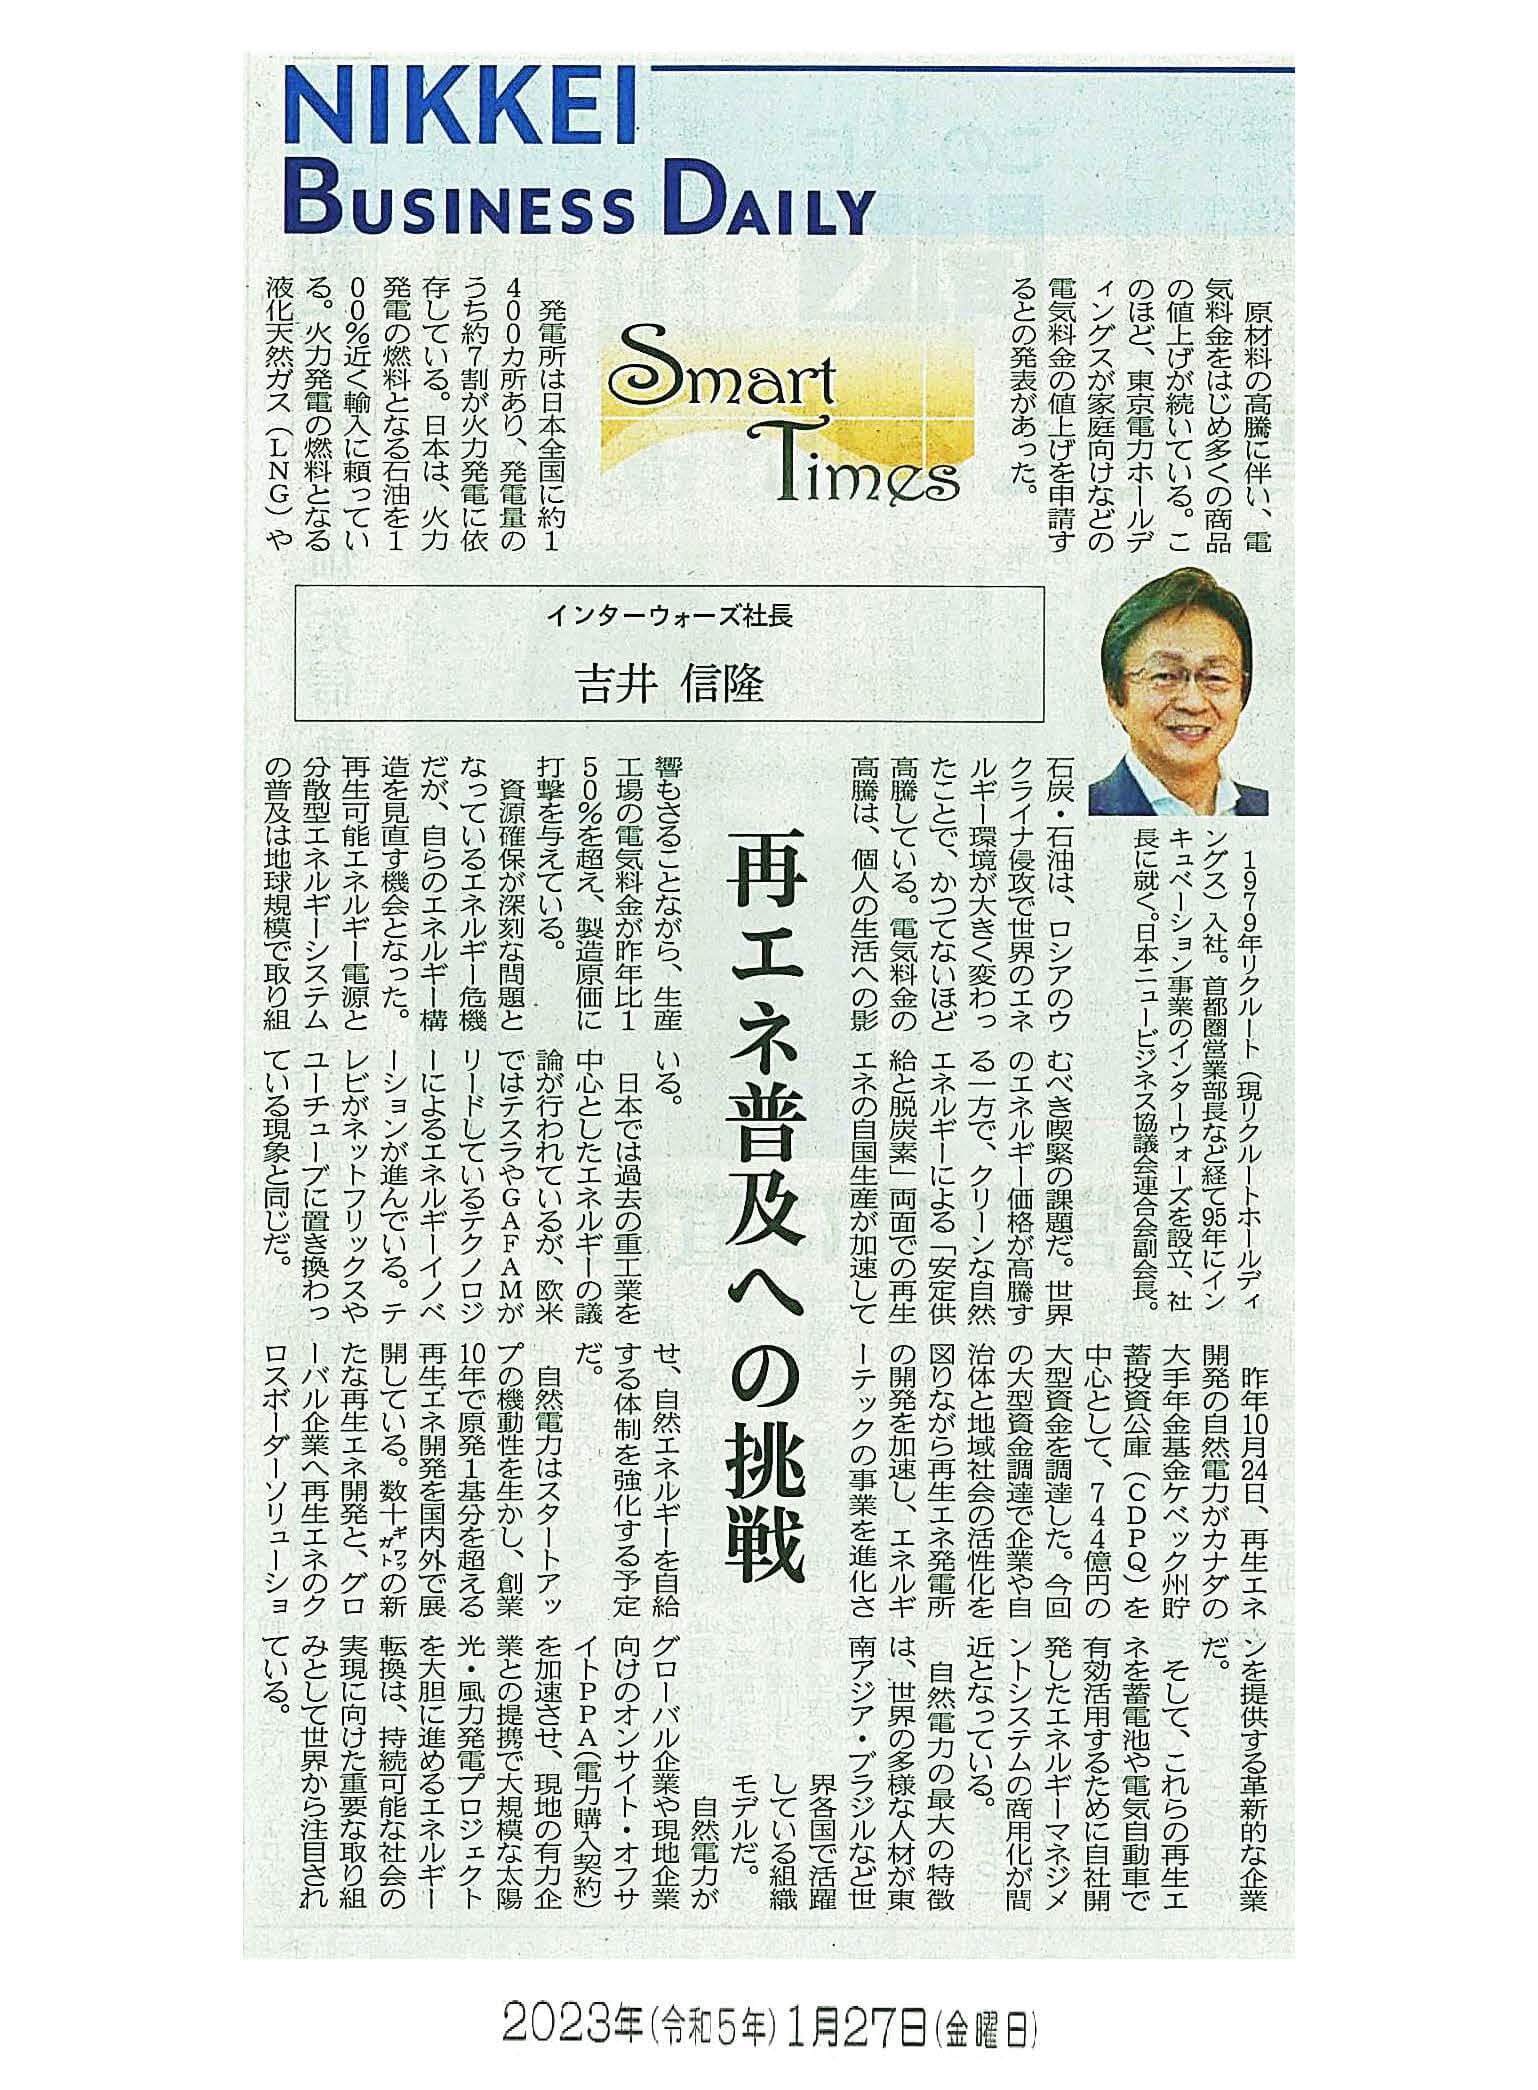 日経産業新聞 Smart Times「再エネ普及への挑戦」